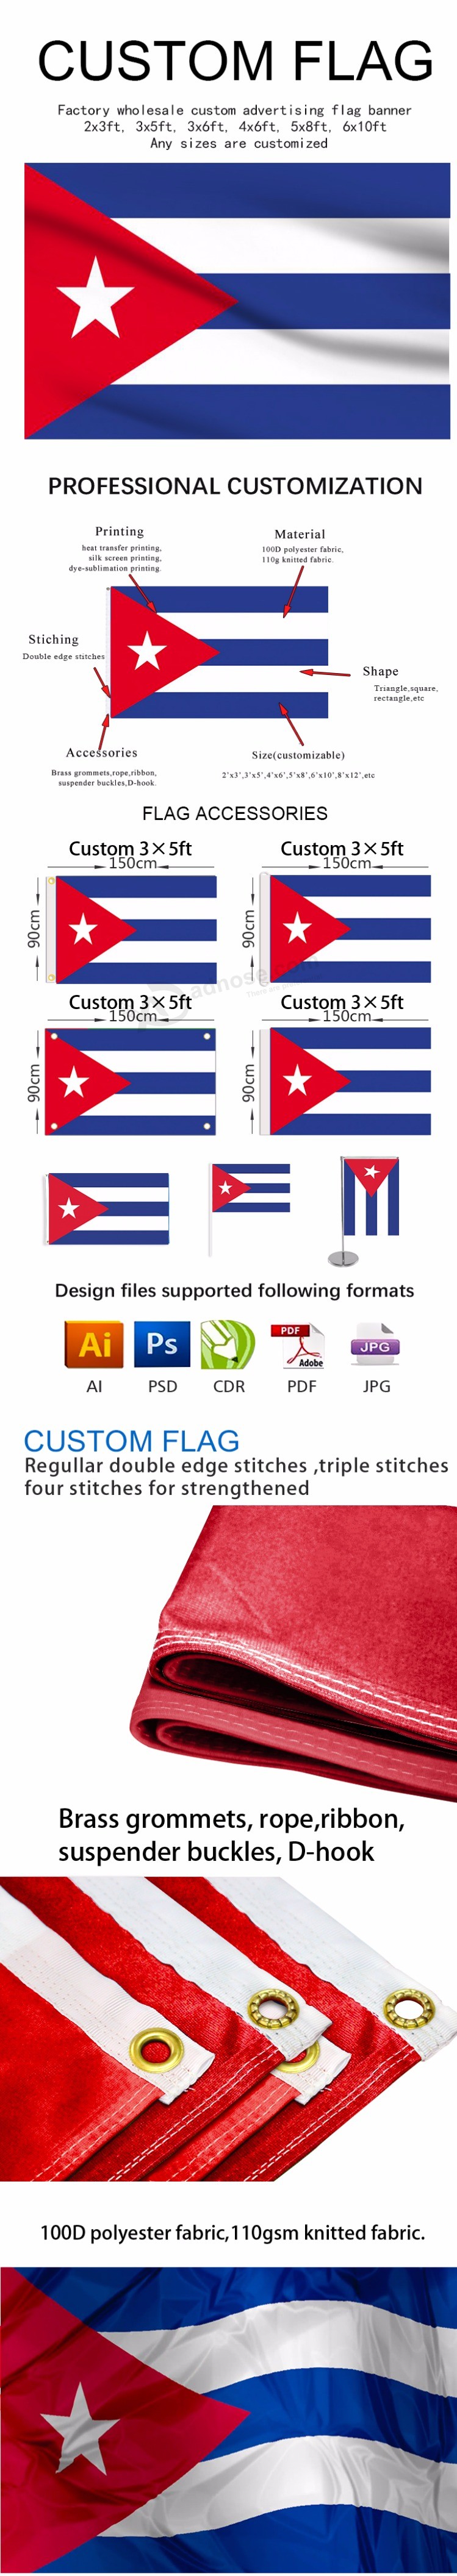 bandiera nazionale con stampa digitale in tessuto a prezzo ridotto